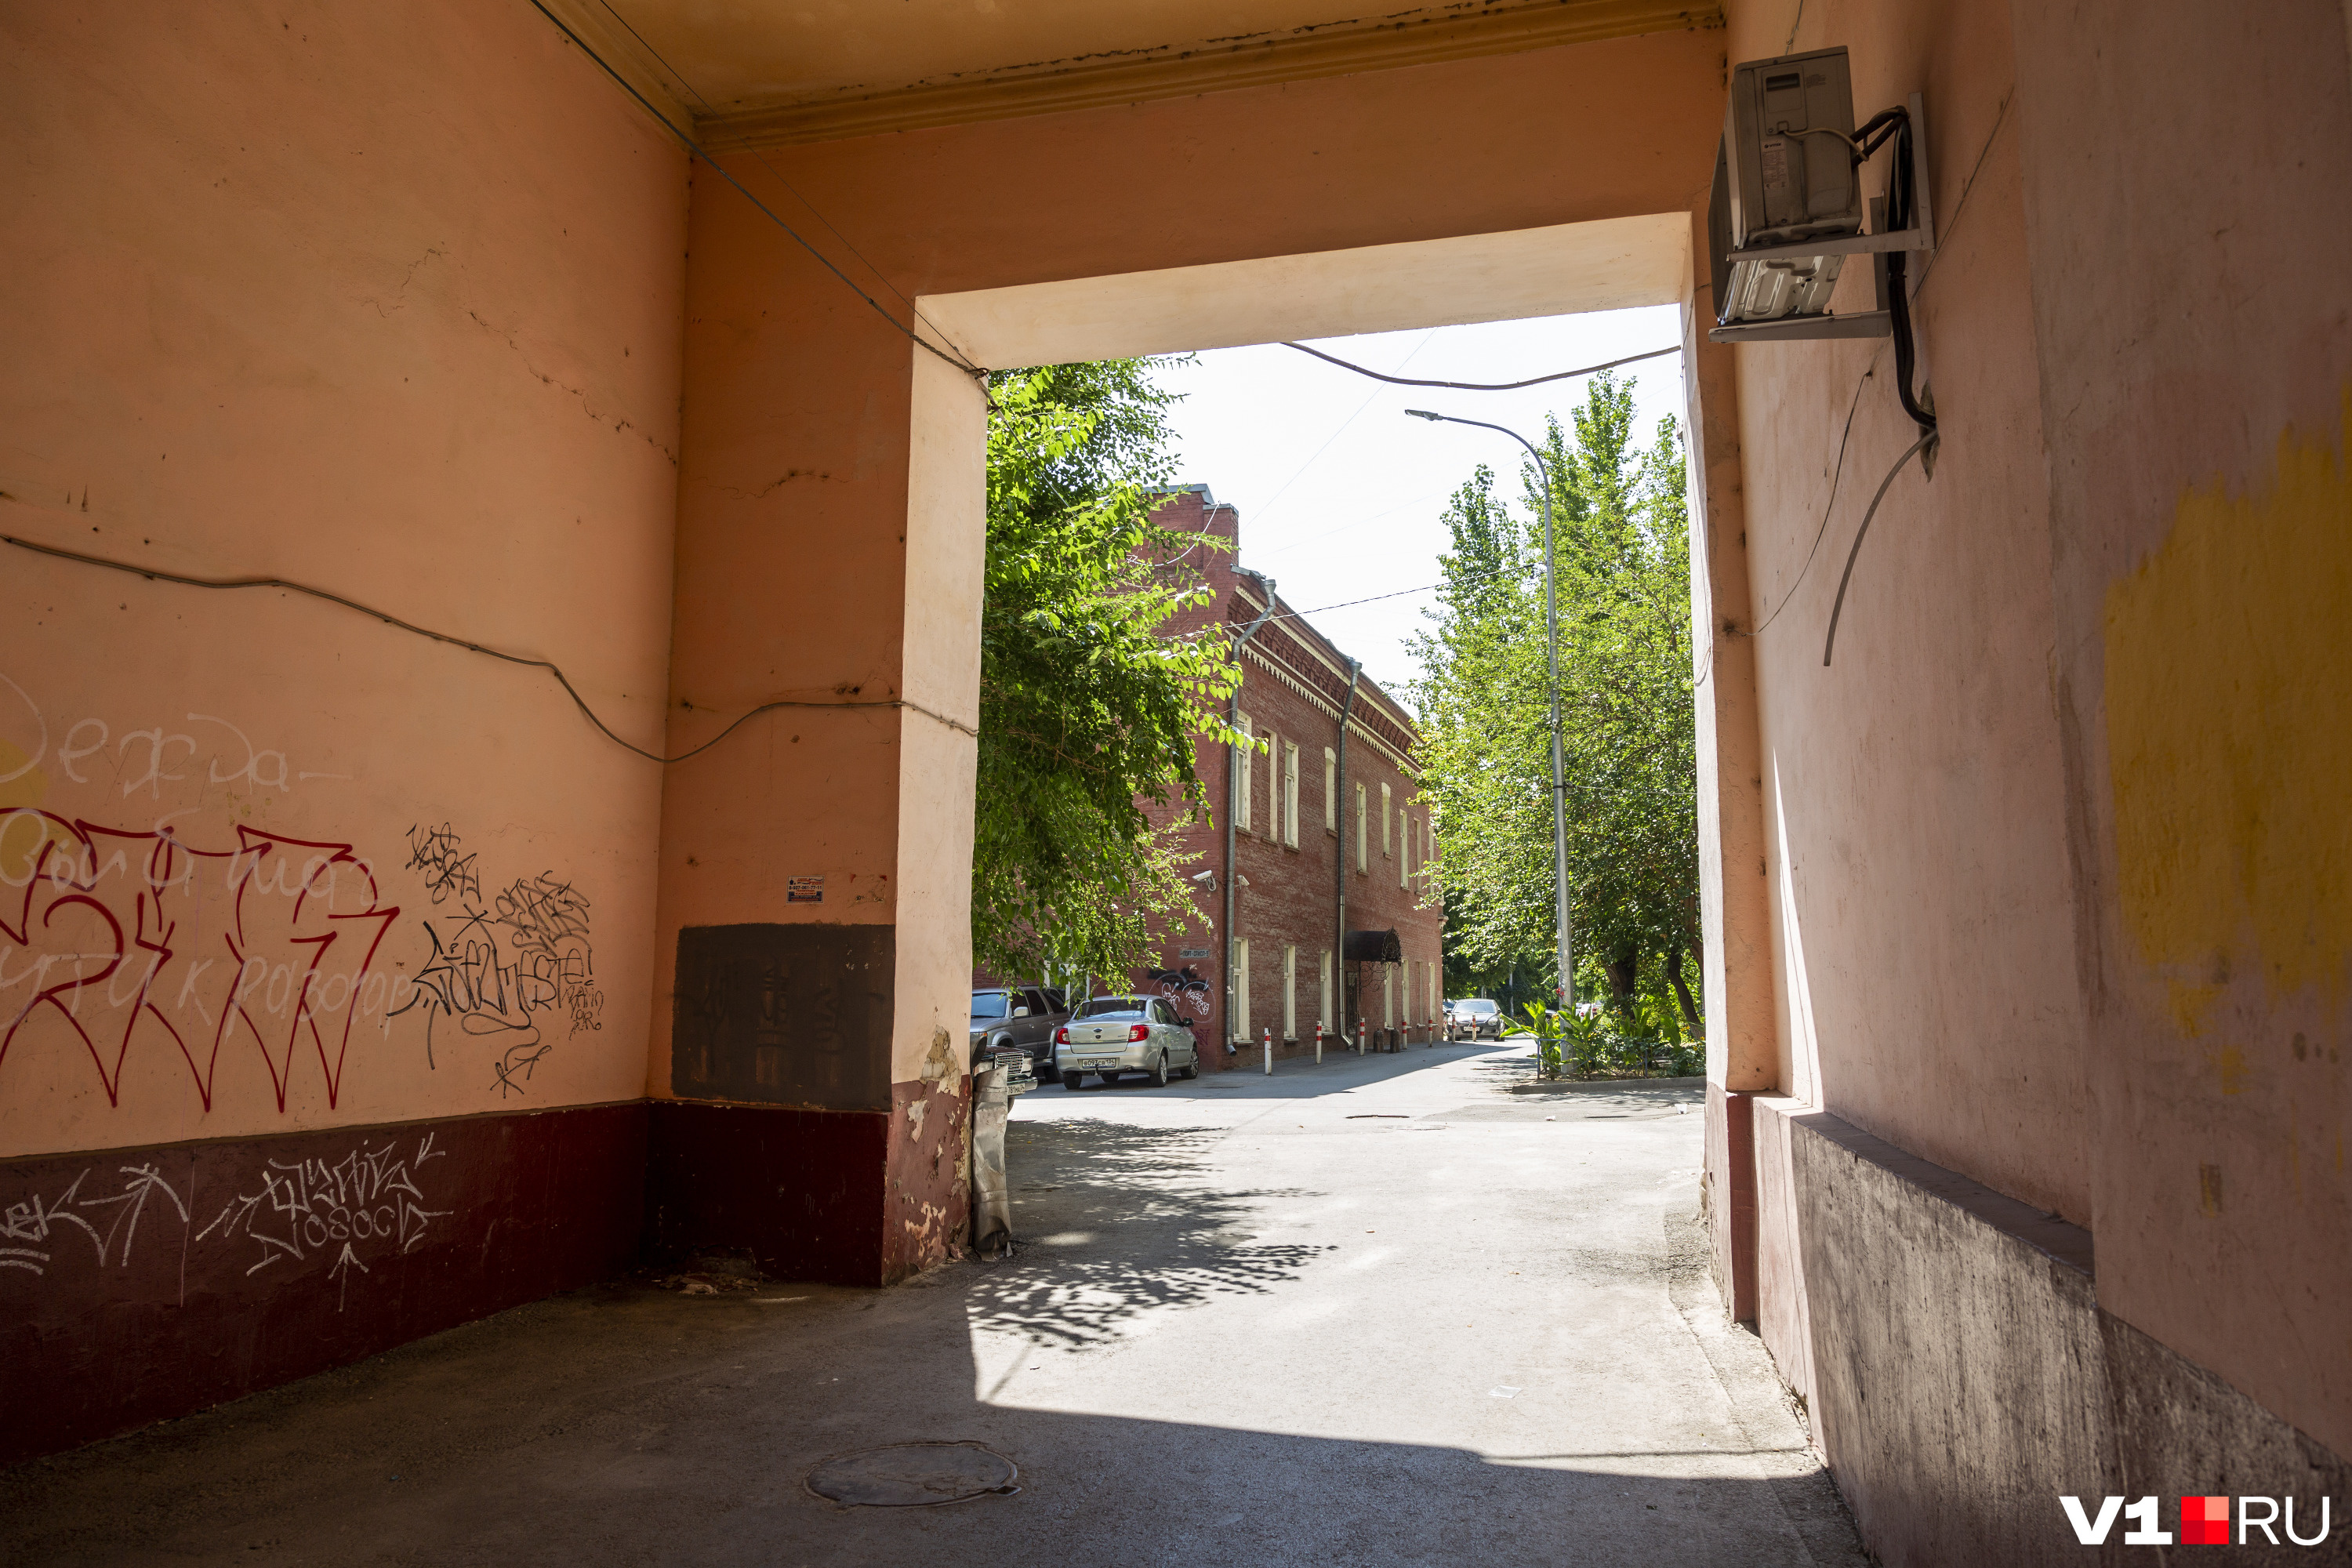 Купеческий дом прячется во дворе "сталинки" на улице Порт-Саида